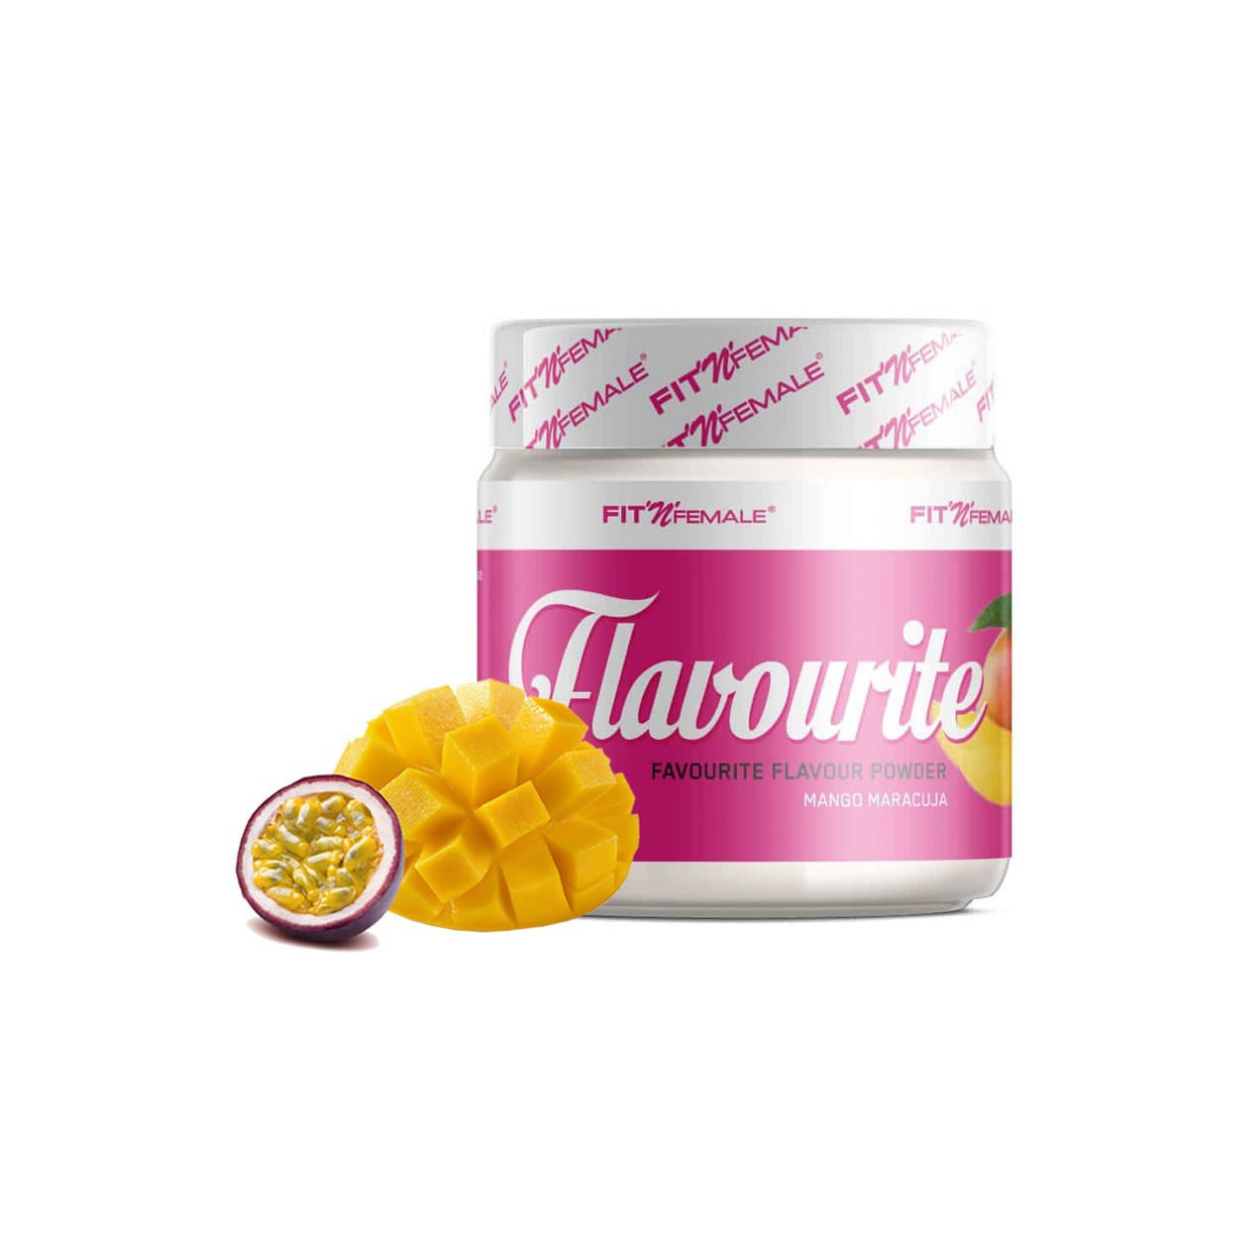 Fit n Female Flavourite Mango Maracuja (200g)